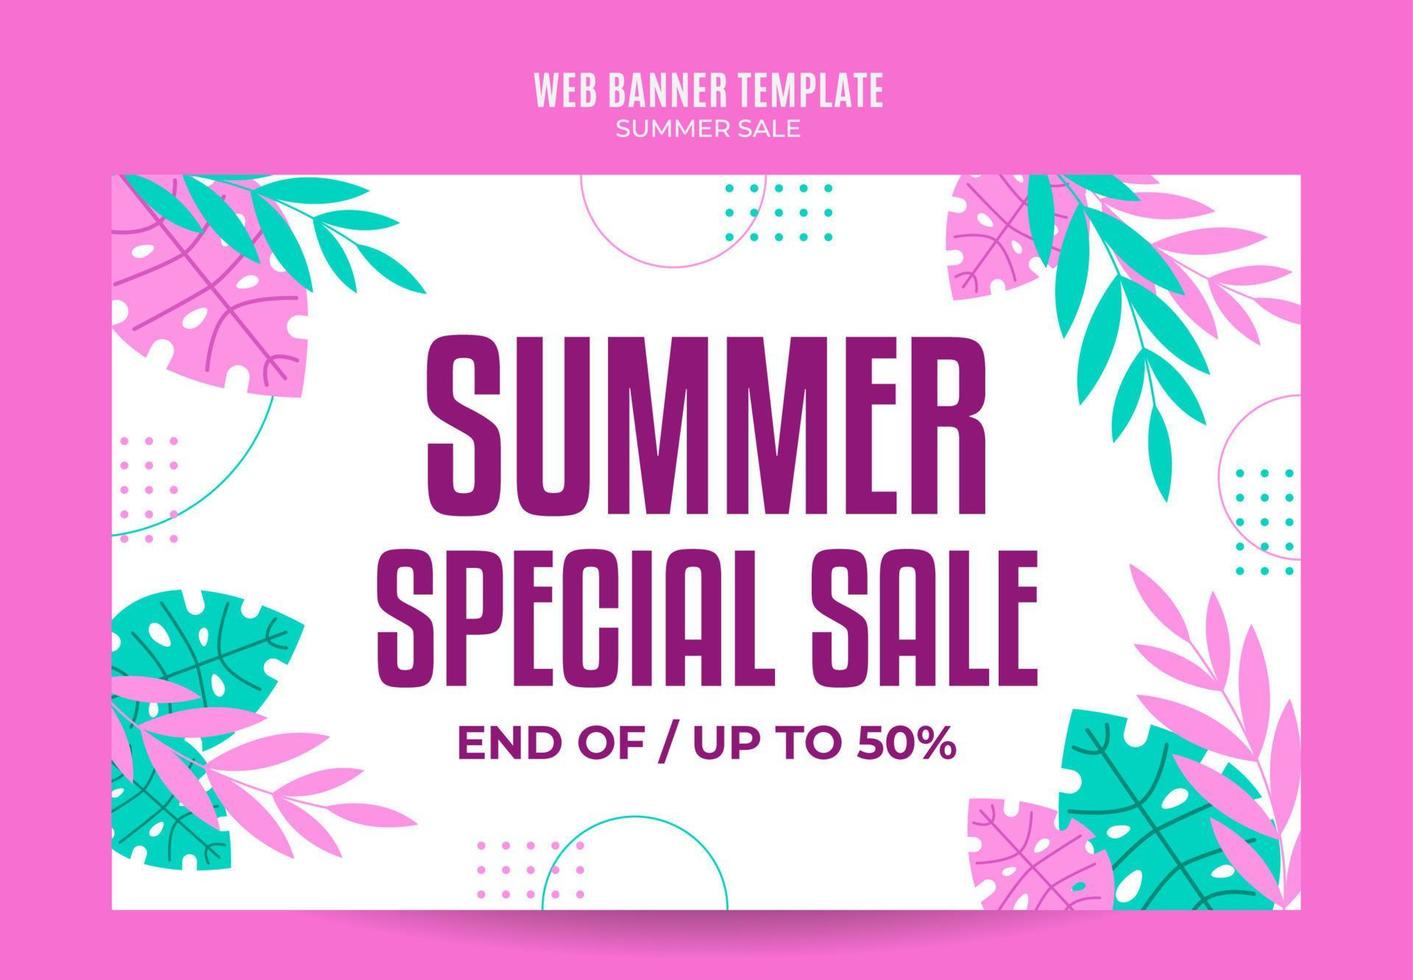 banner web de venta de verano feliz para afiche de medios sociales, banner, área espacial y fondo vector